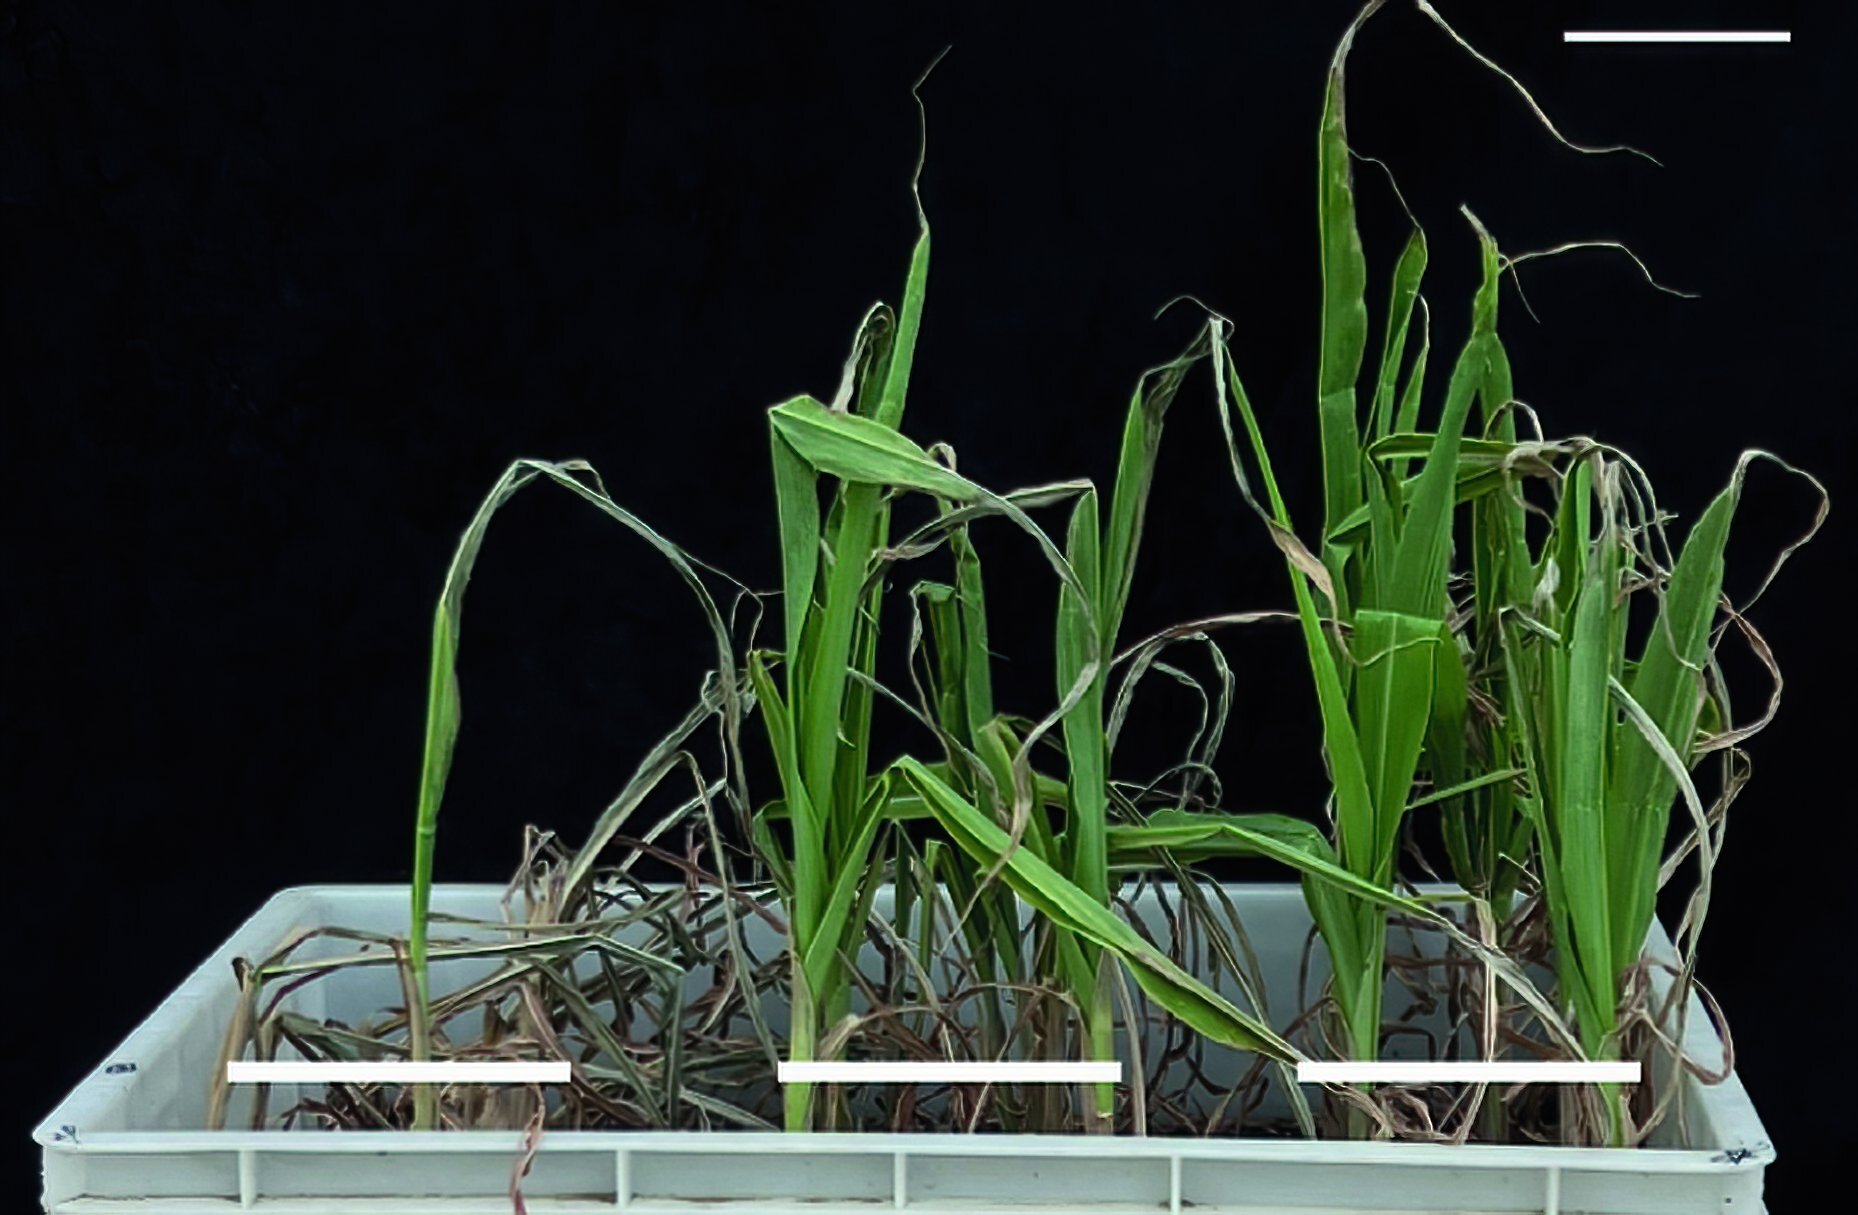 Les chercheurs identifient un gène important pour l’adaptation et déterminent que les racines sont la clé d’un maïs tolérant à la sécheresse